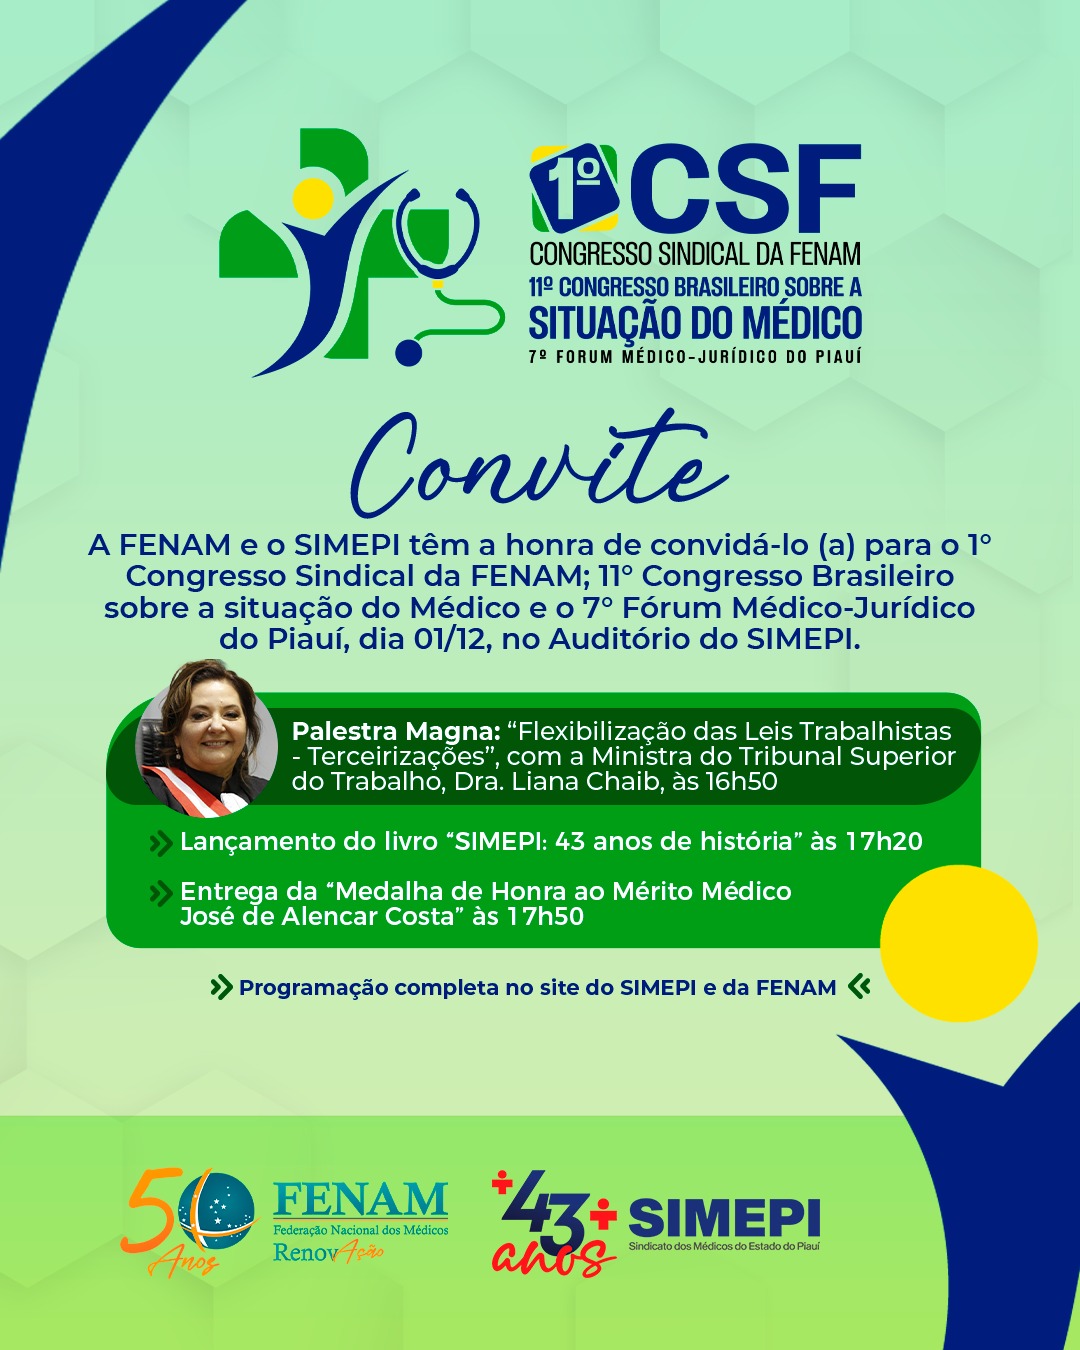 1°Congresso Sindical da FENAM; 11° Congresso Brasileiro sobre a situação do Médico.